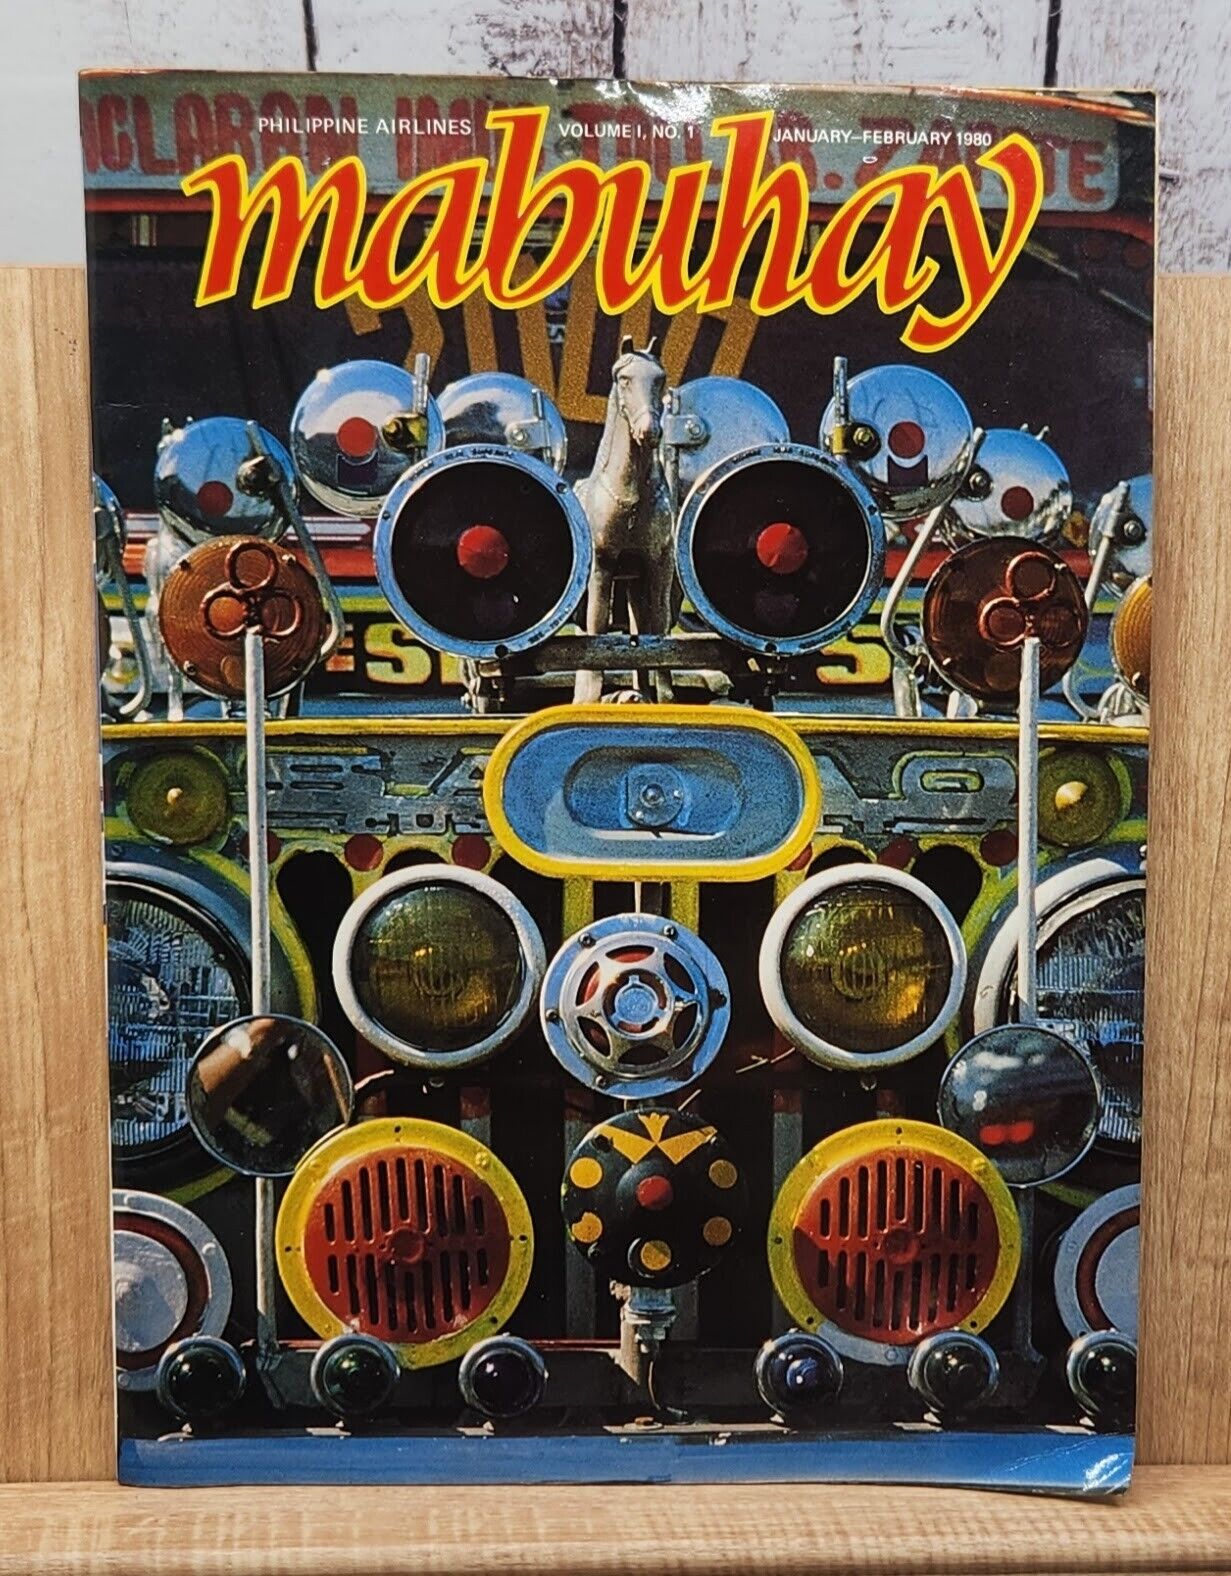 Mabuhay Philippine Airlines Inflight Magazine Volume 1 No. 1 Jan.-Feb. 1980